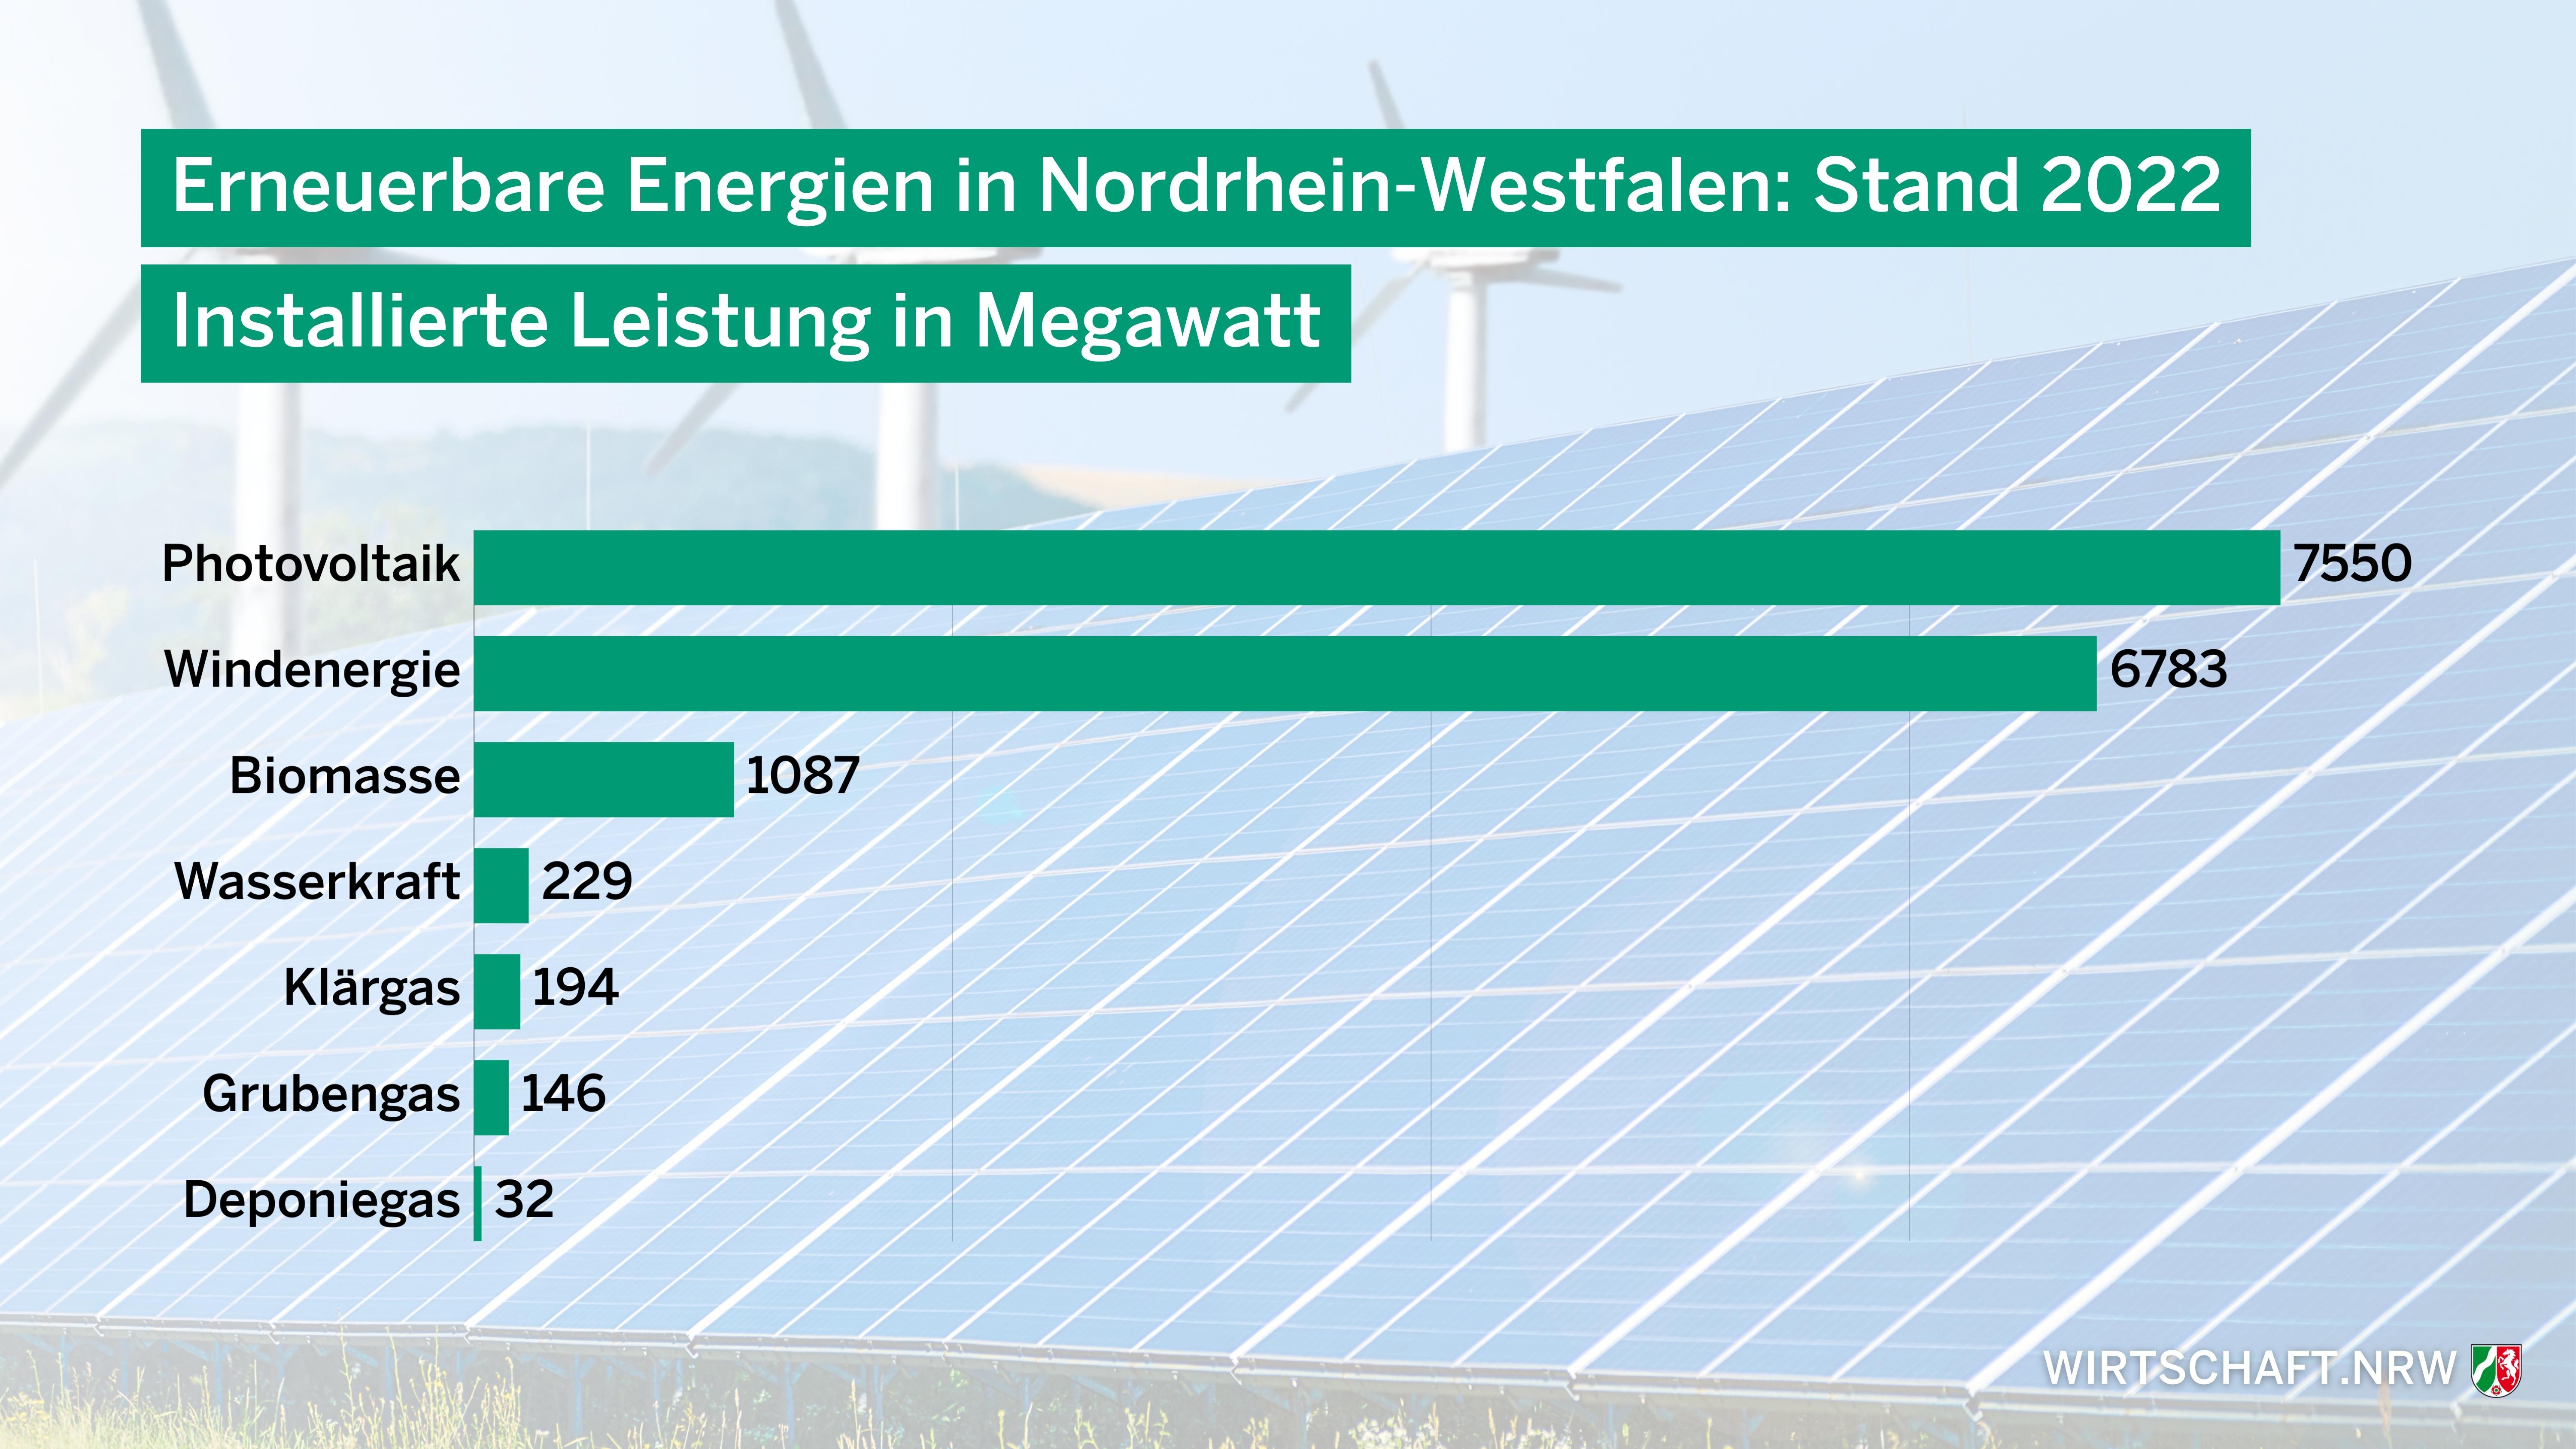 Erneuerbare Energien in Nordrhein-Westfalen, Stand 2022